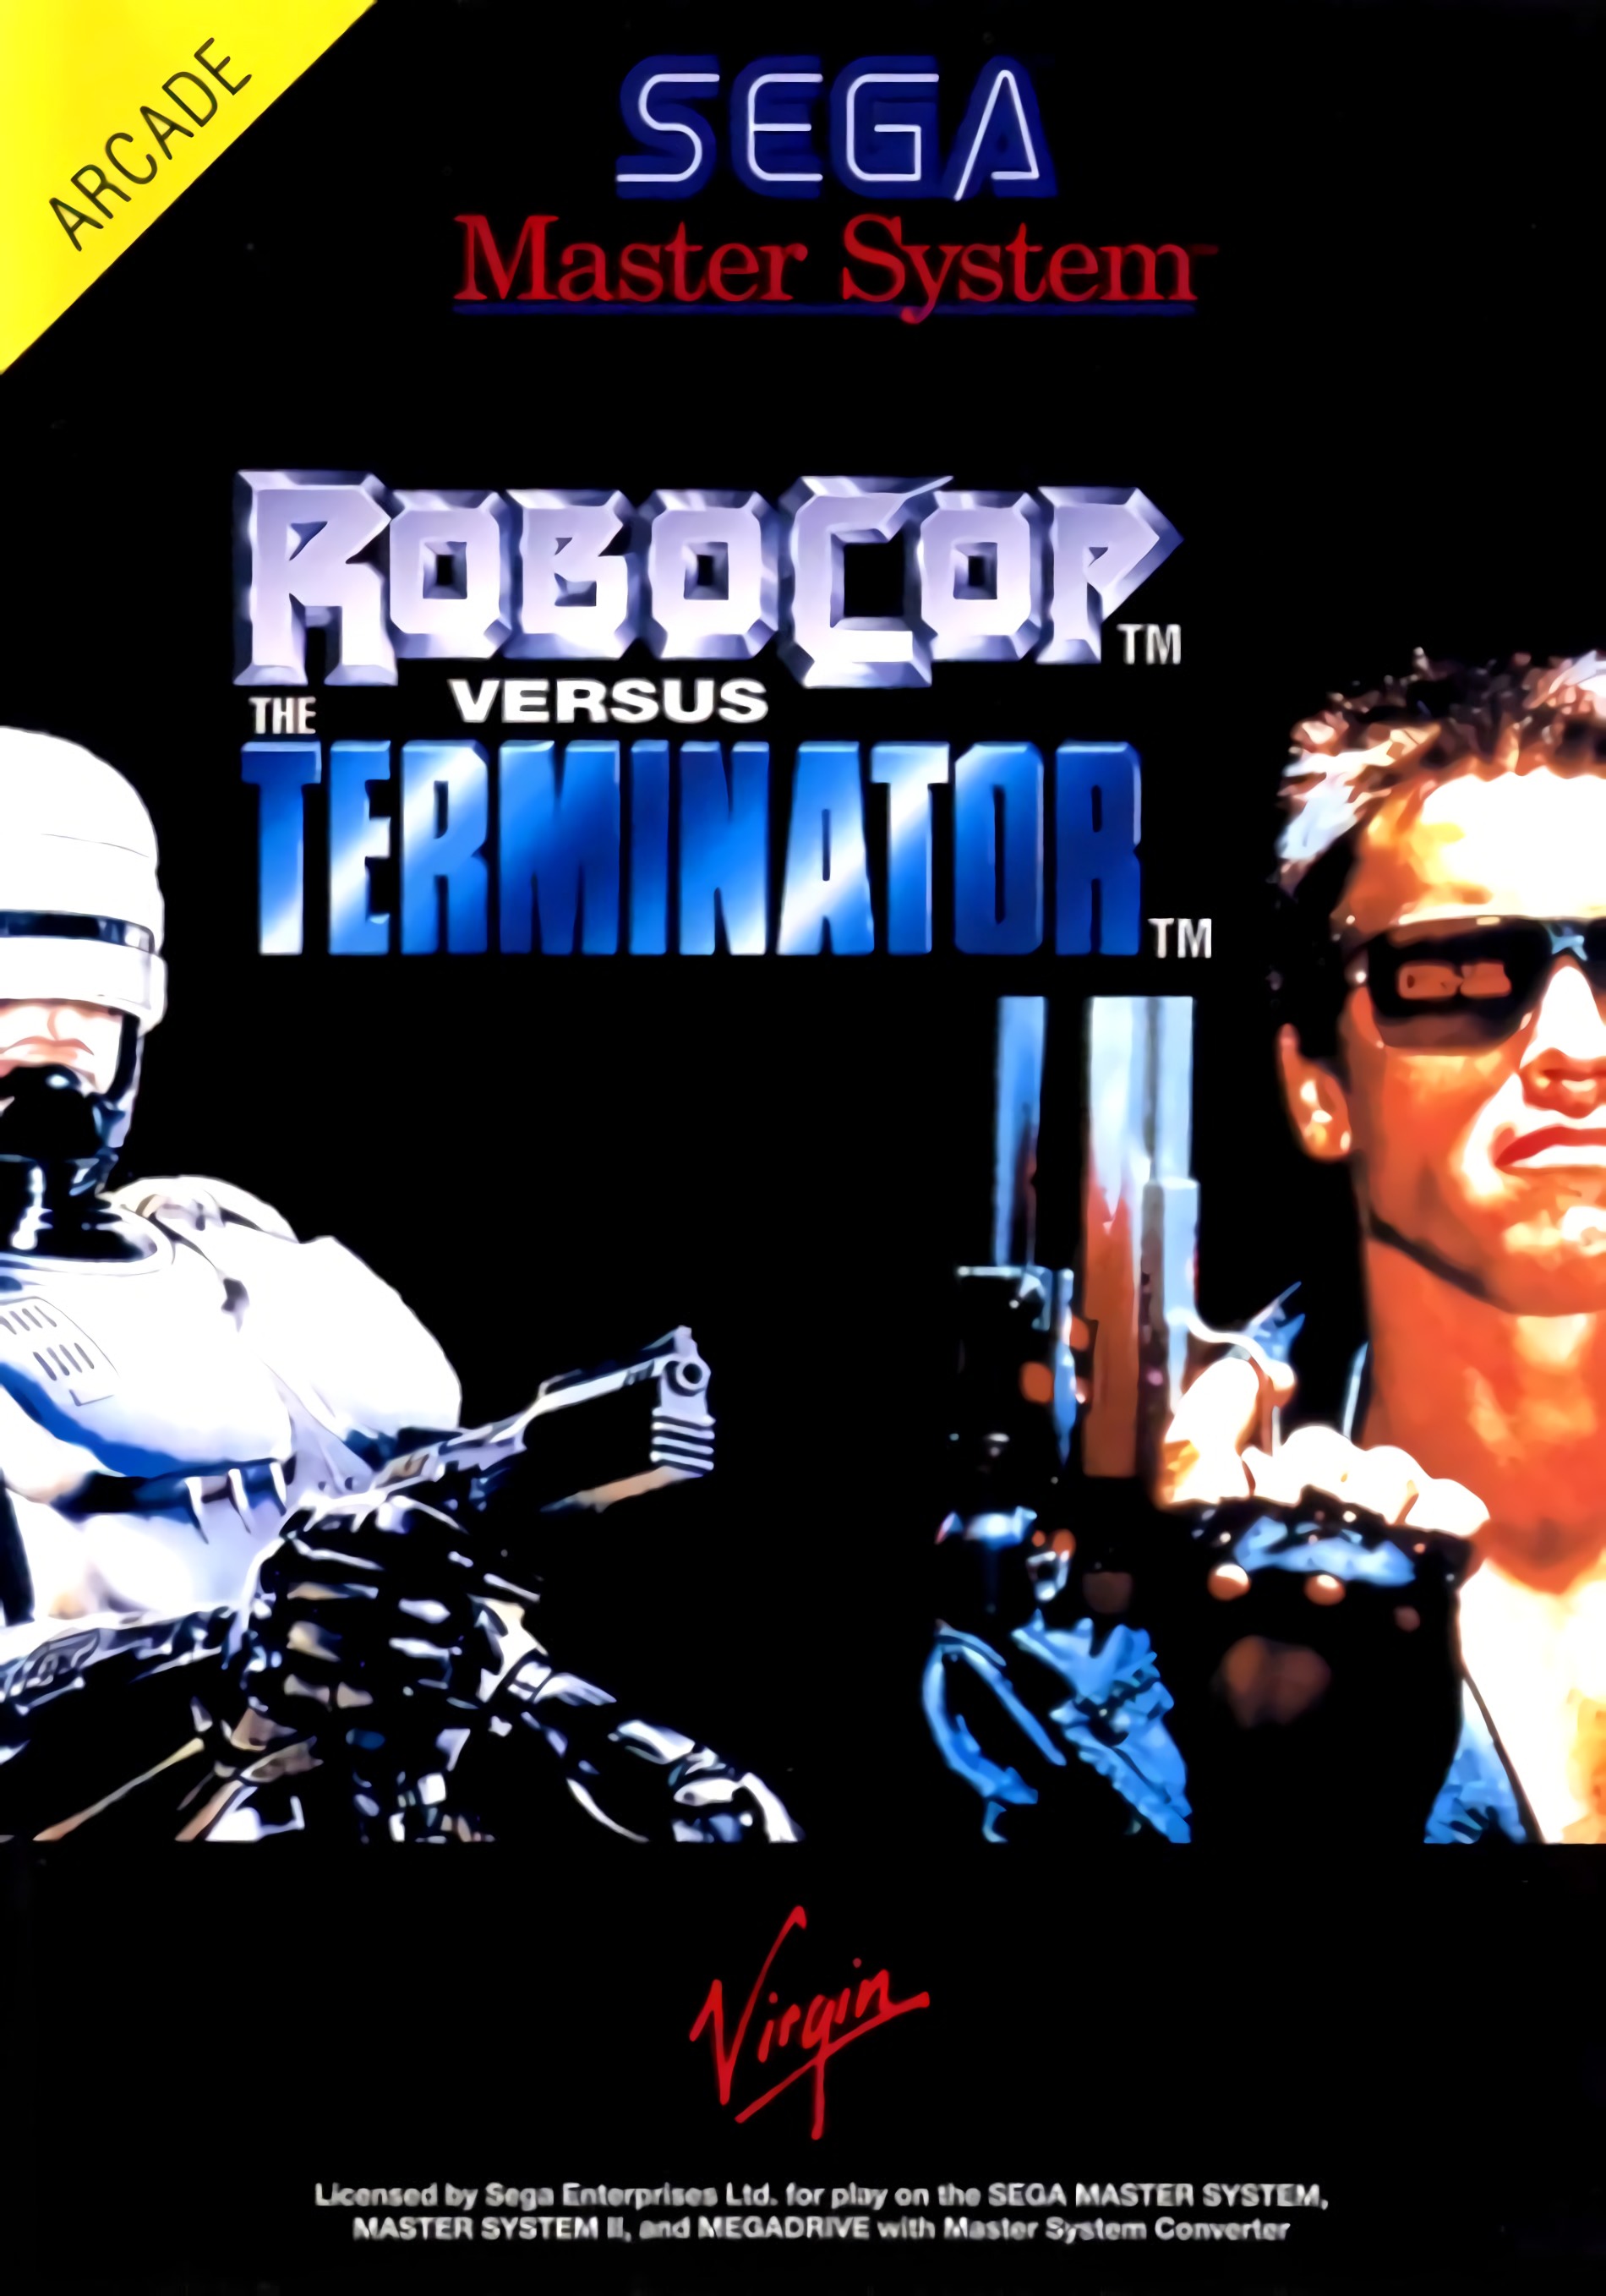 Игры сега робокоп. Терминатор 1 Sega. Игра Sega: Robocop versus Terminator. Робокоп против Терминатора сега. Robocop vs Terminator сега обложка.